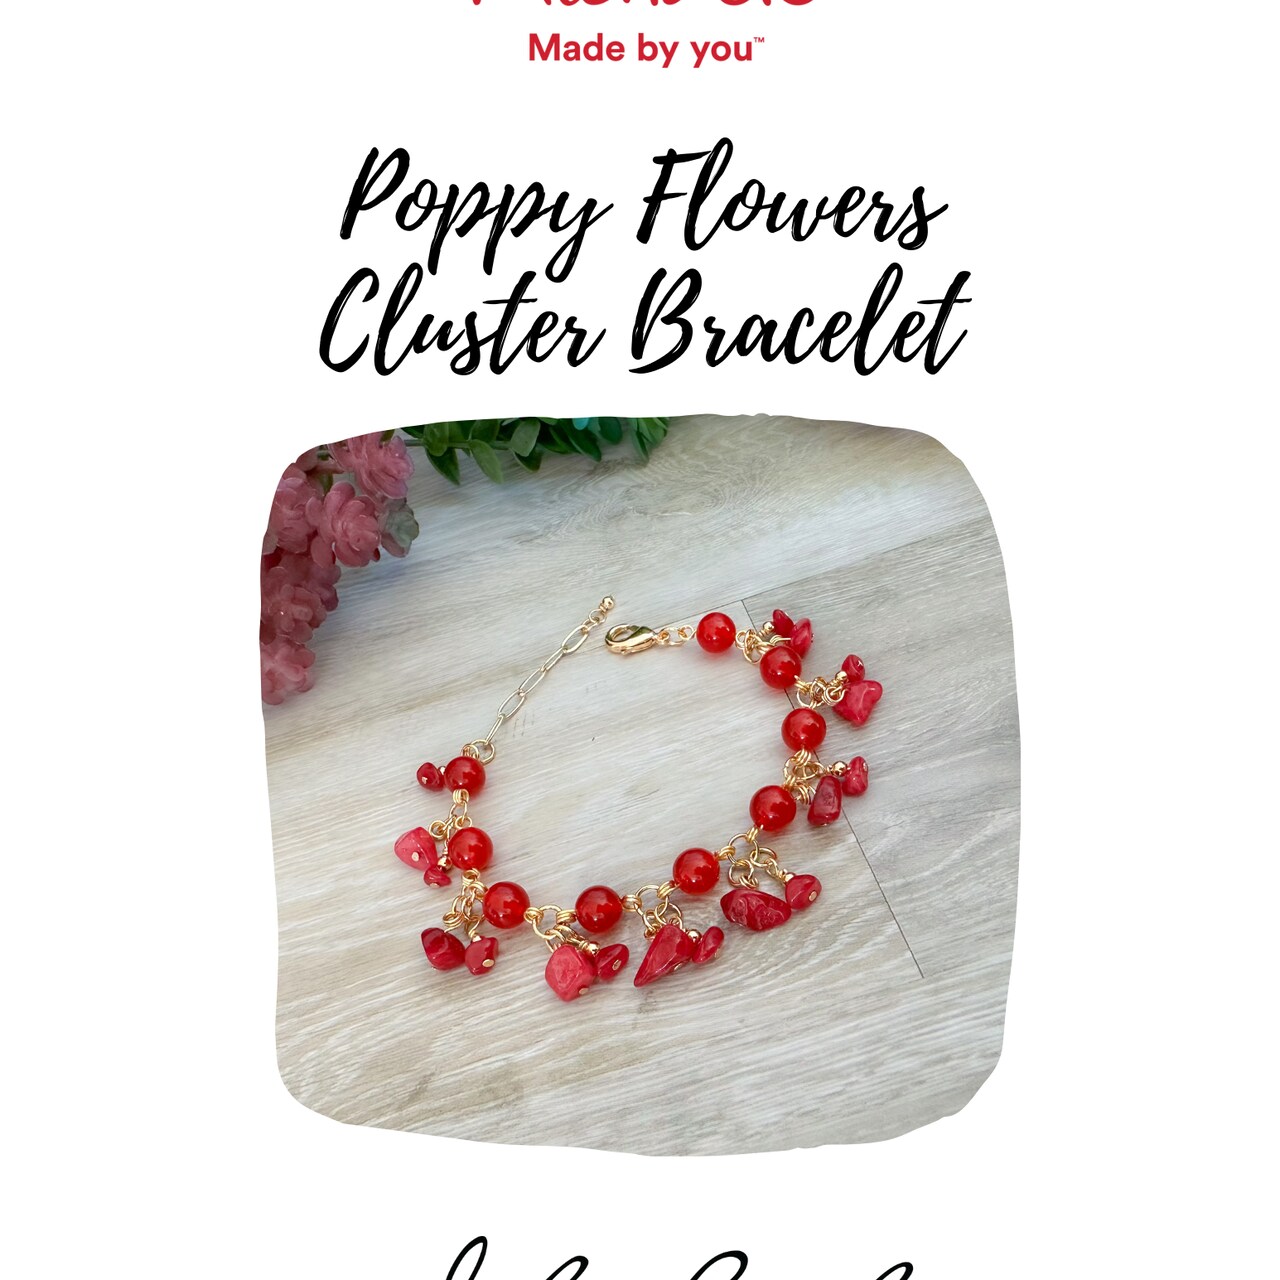 Poppy Flowers Cluster Bracelet with @daniellewickesjewelry